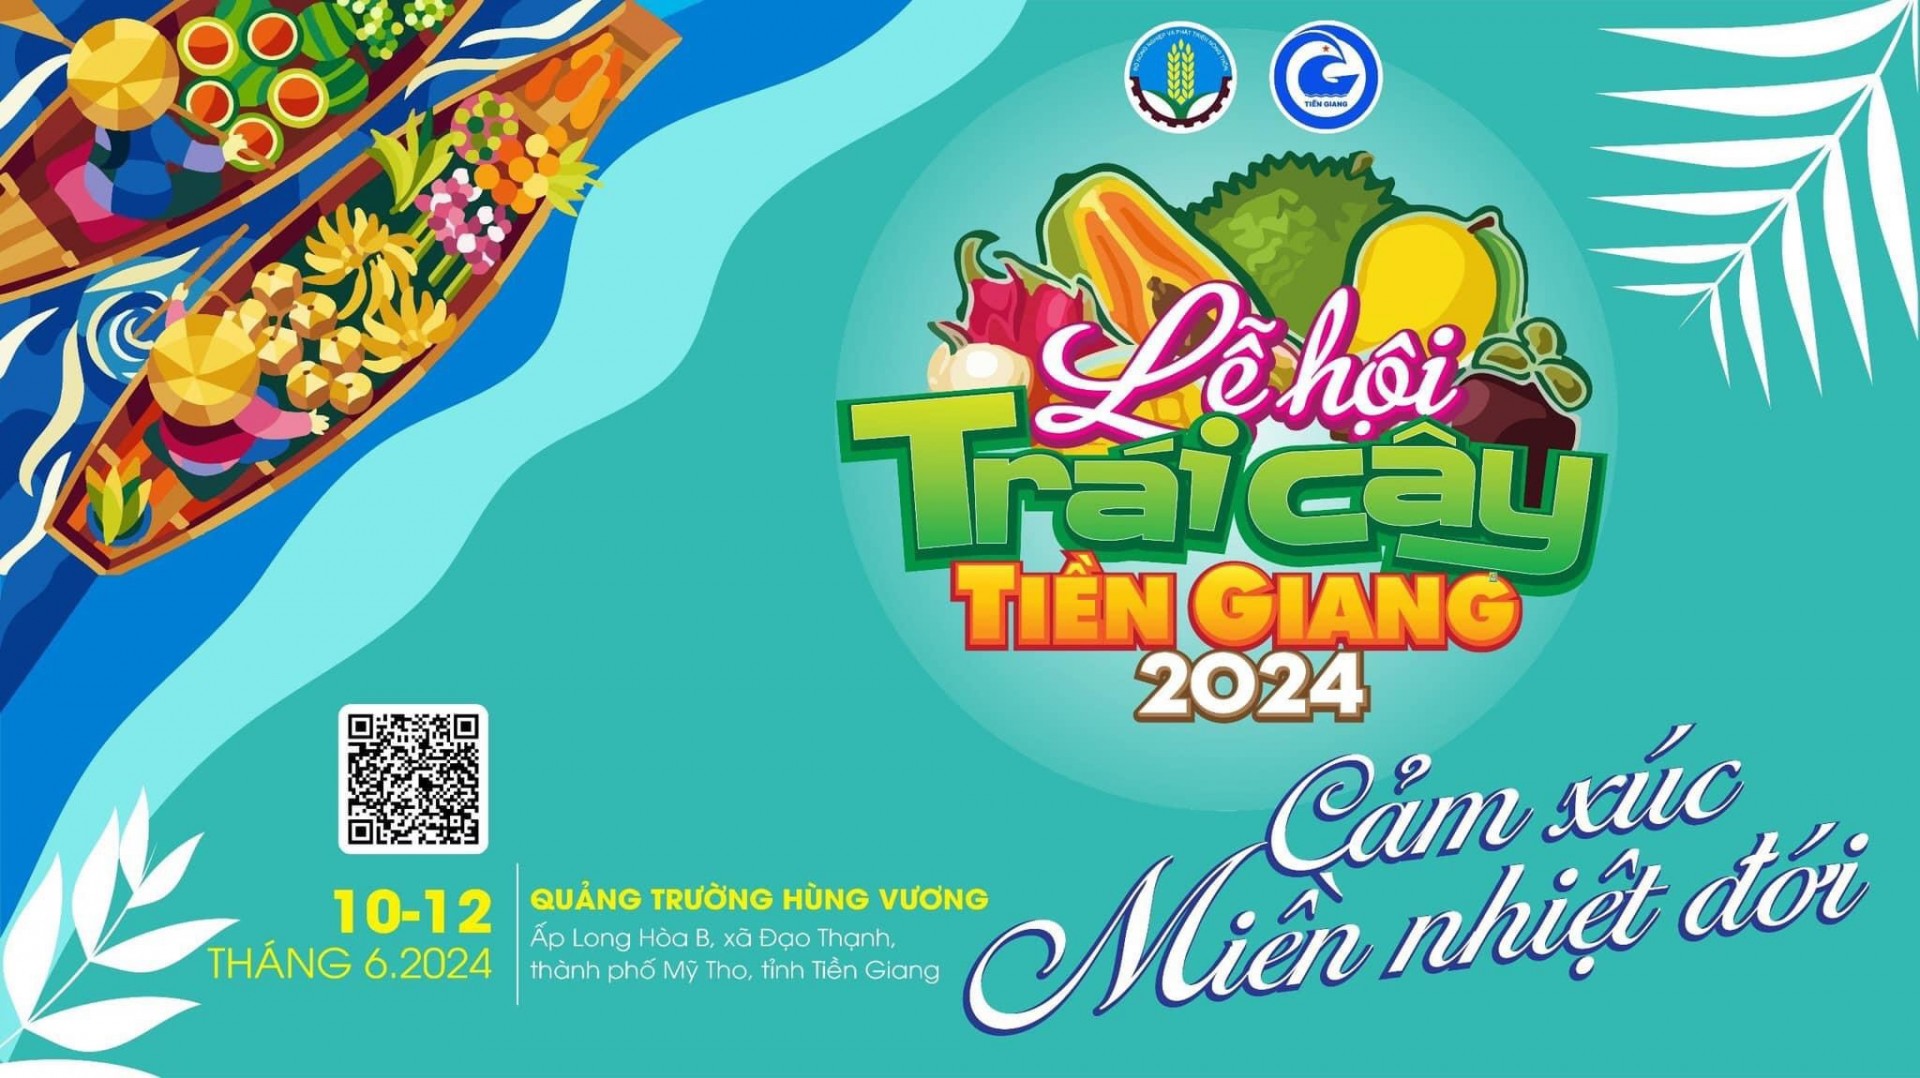 Lễ hội trái cây Tiền Giang với chủ đề cảm xúc trên miền nhiệt đới sẽ tổ chức vào 10/6 đến ngày 12/6/2024.